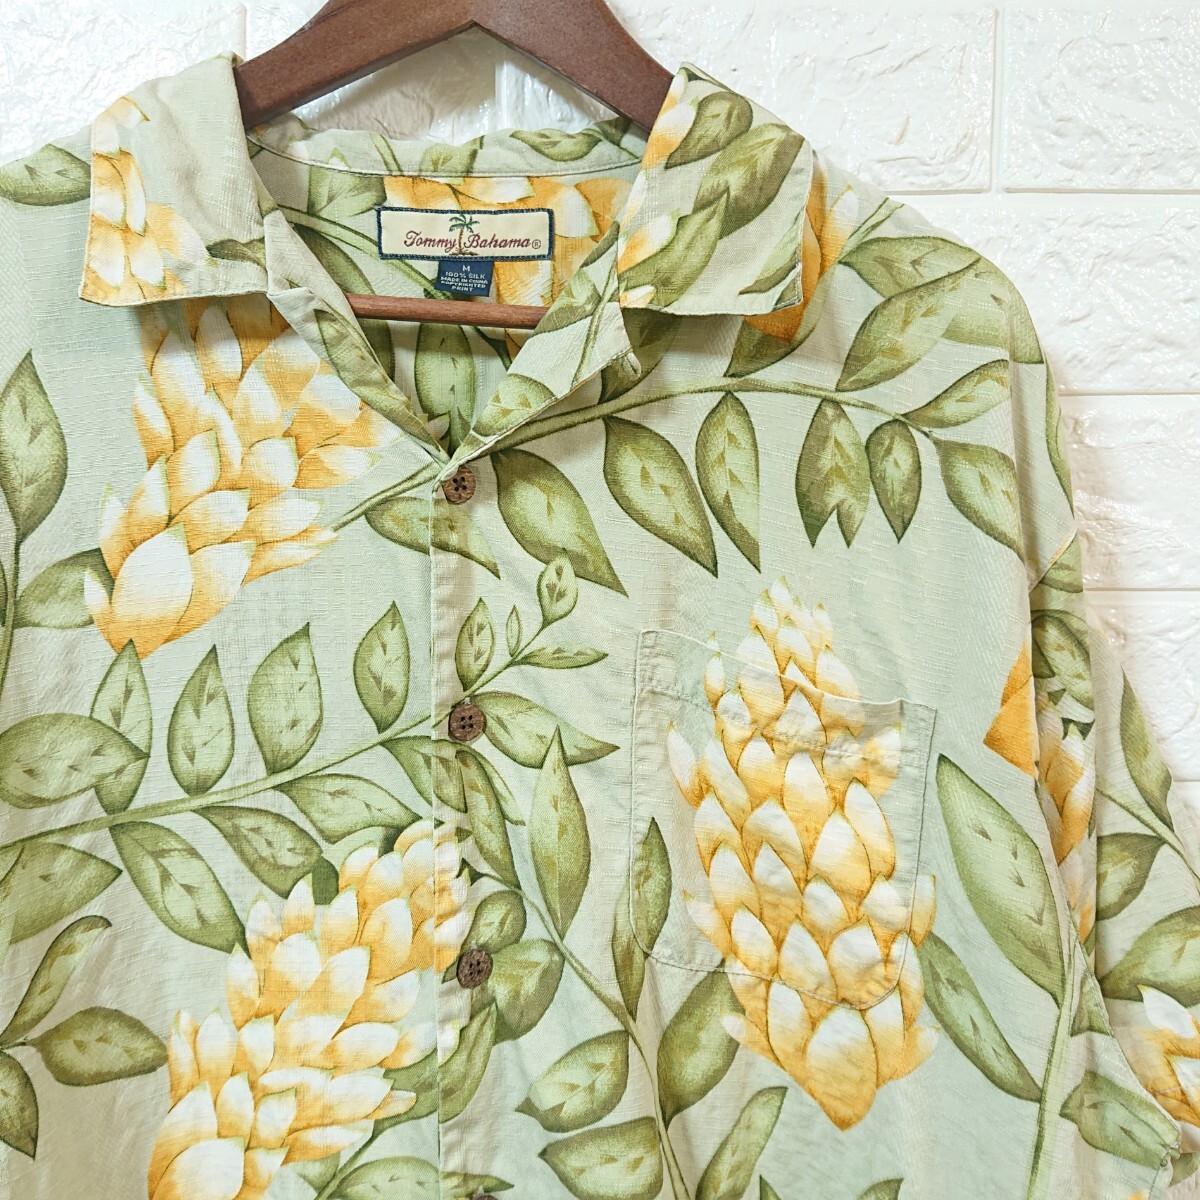 【高級】Tommy Bahama トミーバハマ ボタニカル柄 植物柄 ココナッツボタン シルク アロハシャツ Mサイズ botanical pattern silk alohaの画像1